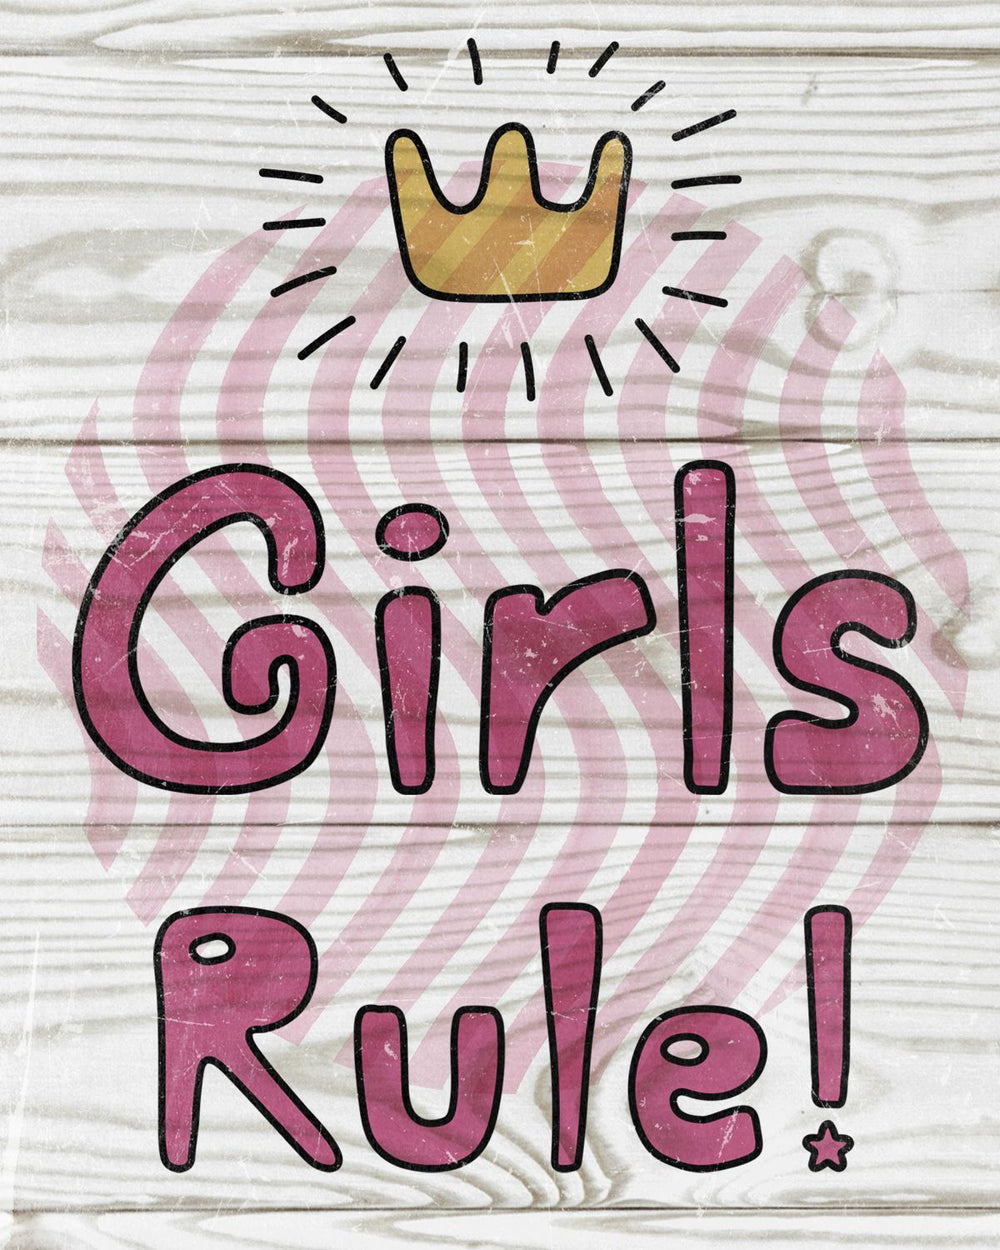 Girls Rule Typography